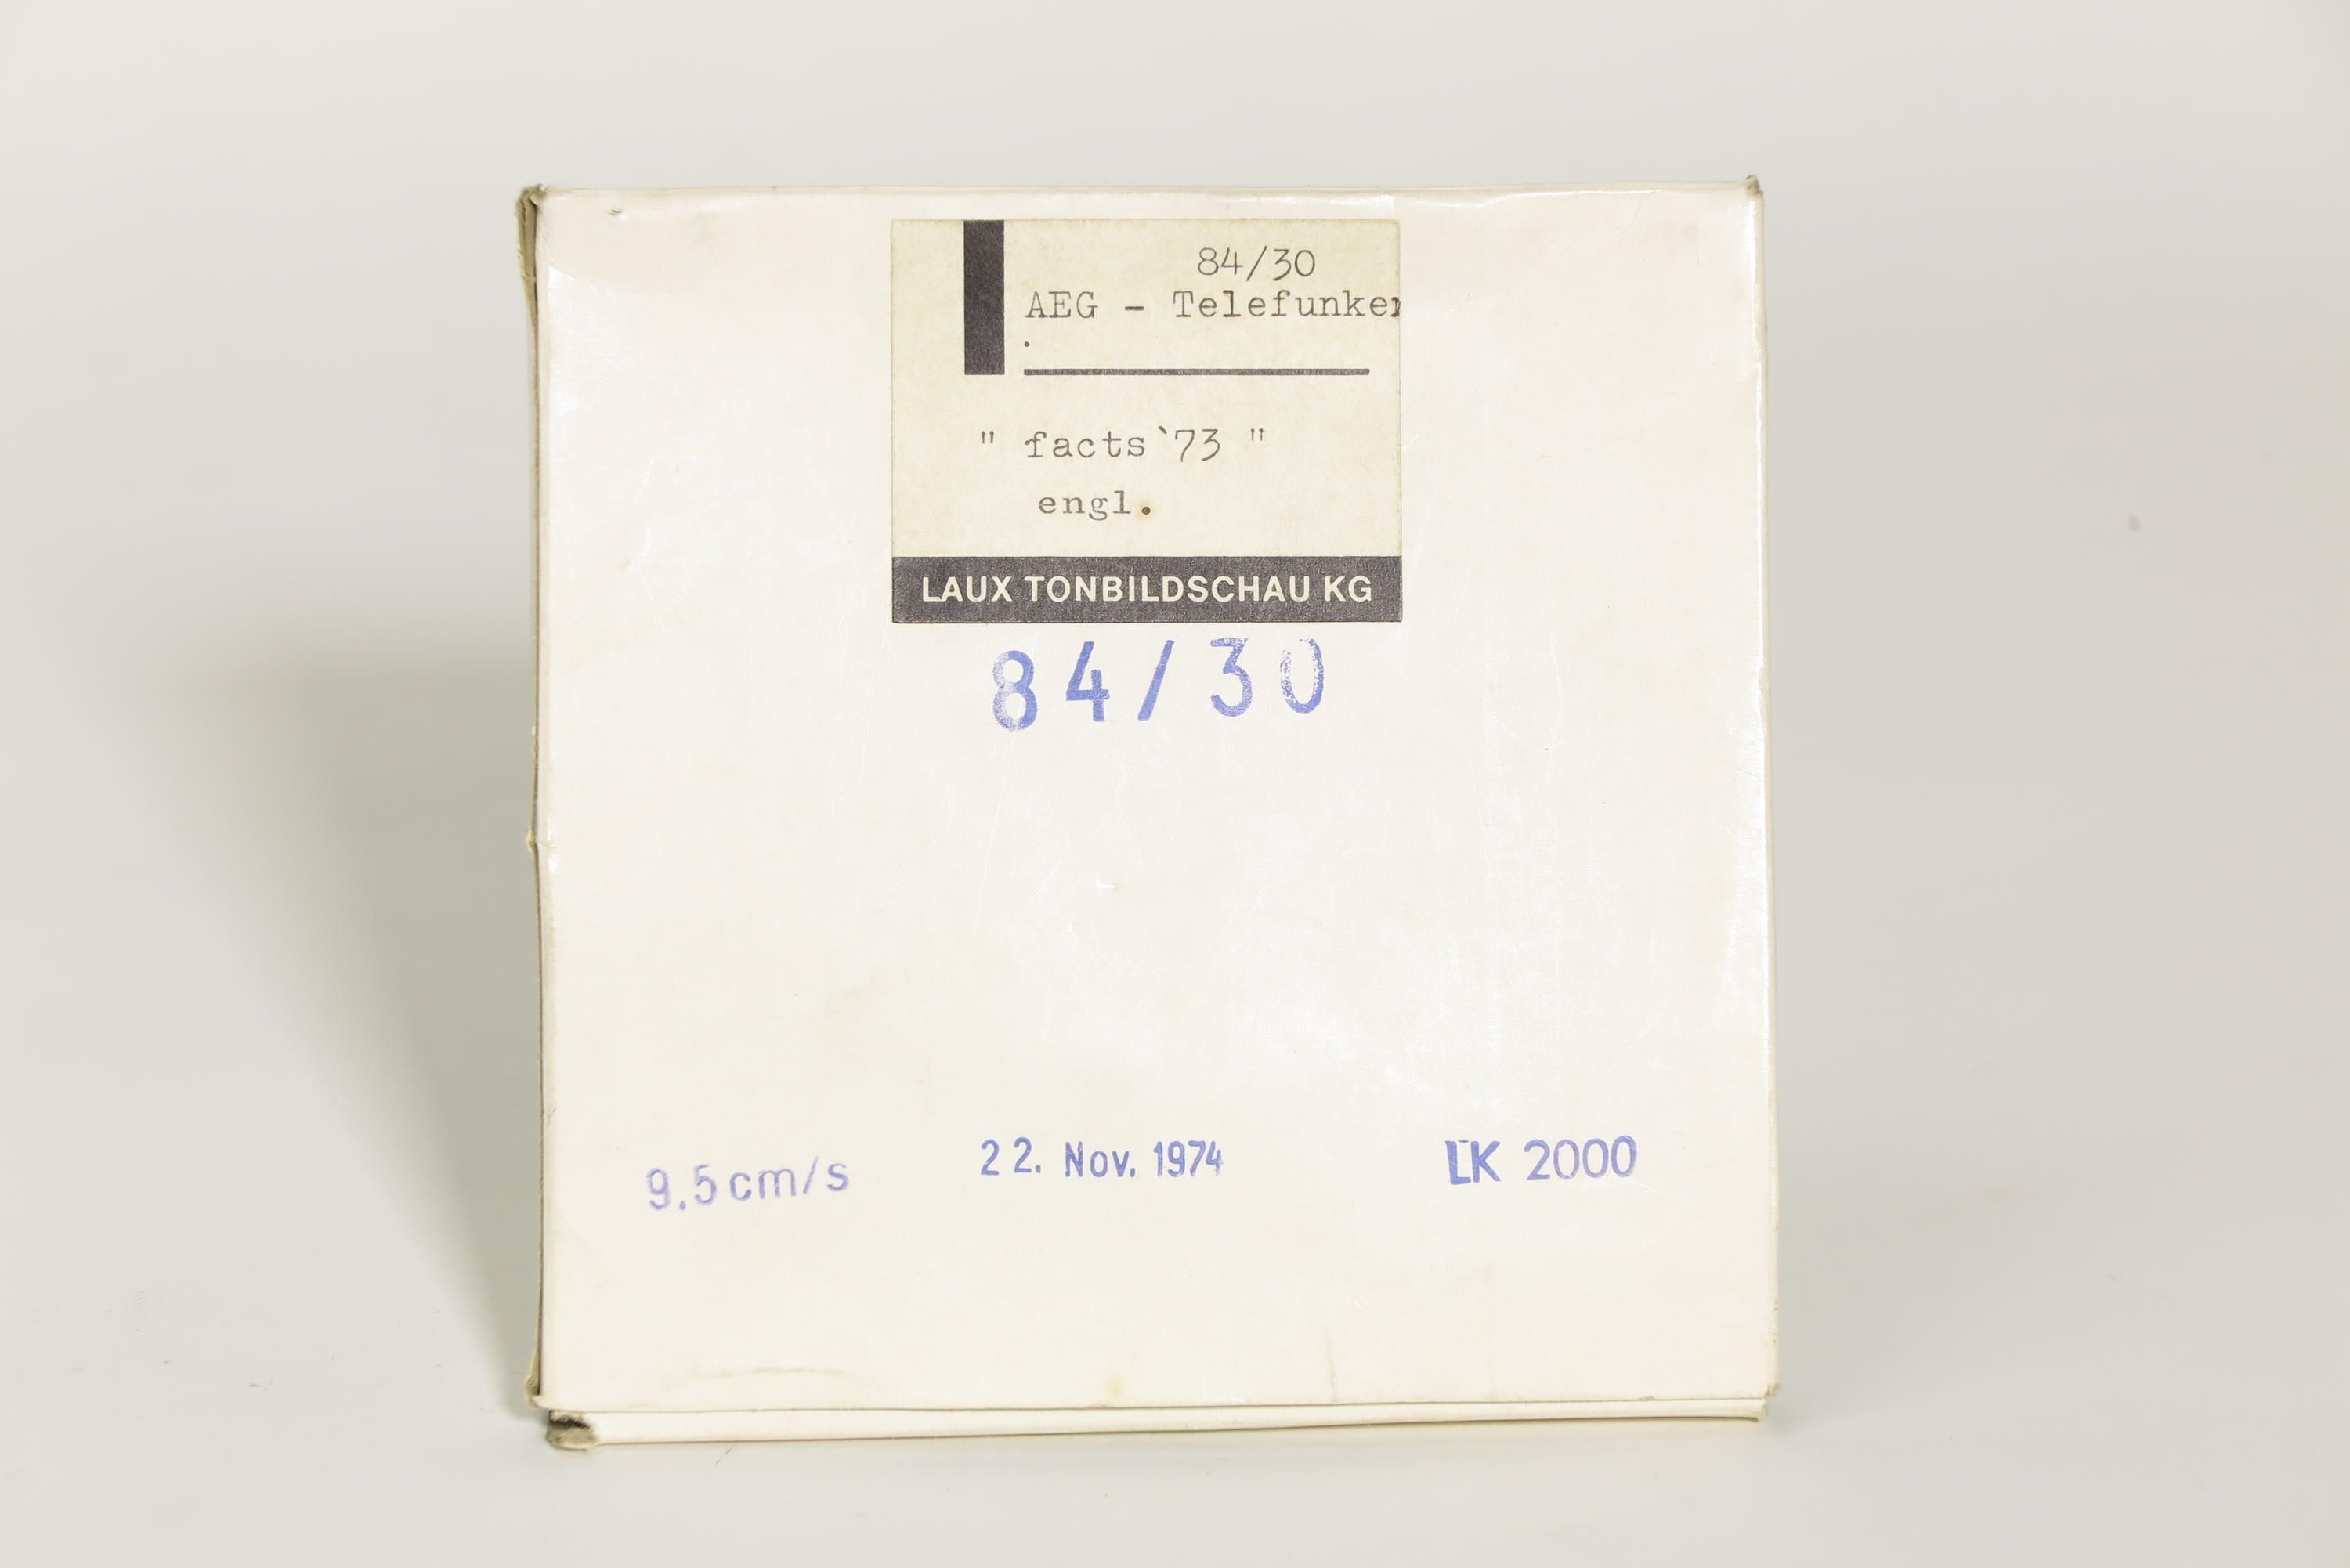 Zubehör zu Tonbildautomat LK 2000 mit Kindermann Filmprojektor und Telefunken Magnetophon 300 TS, Verpackung Bandspule (Deutsches Technikmuseum CC BY)